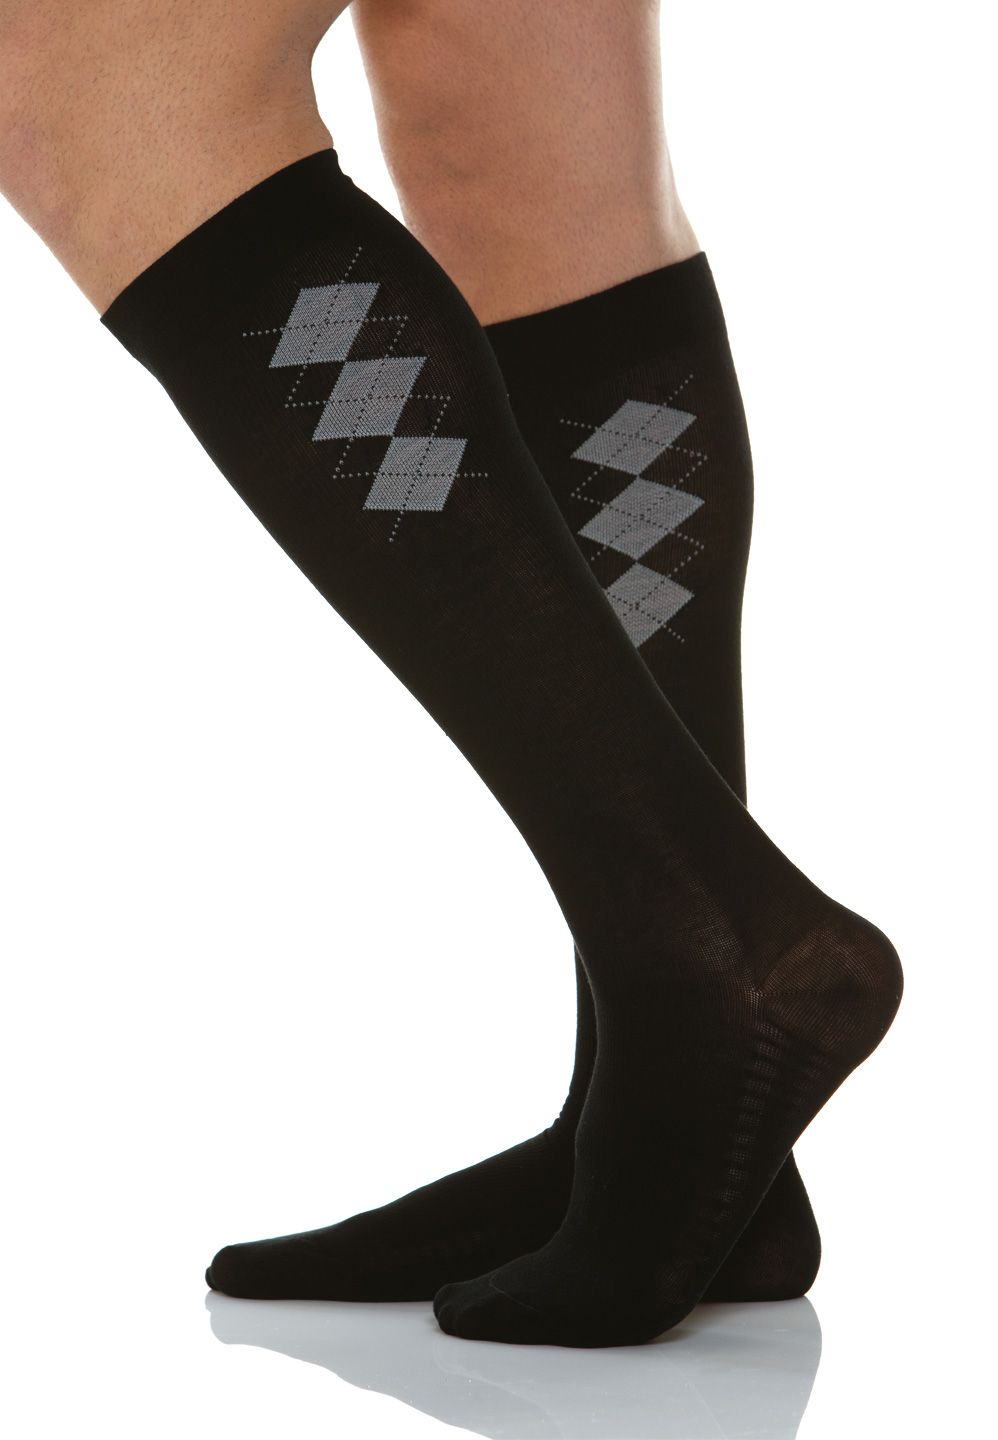 Pánske bavlnené kompresné ponožky 18-22 mmHg s masážnou podrážkou